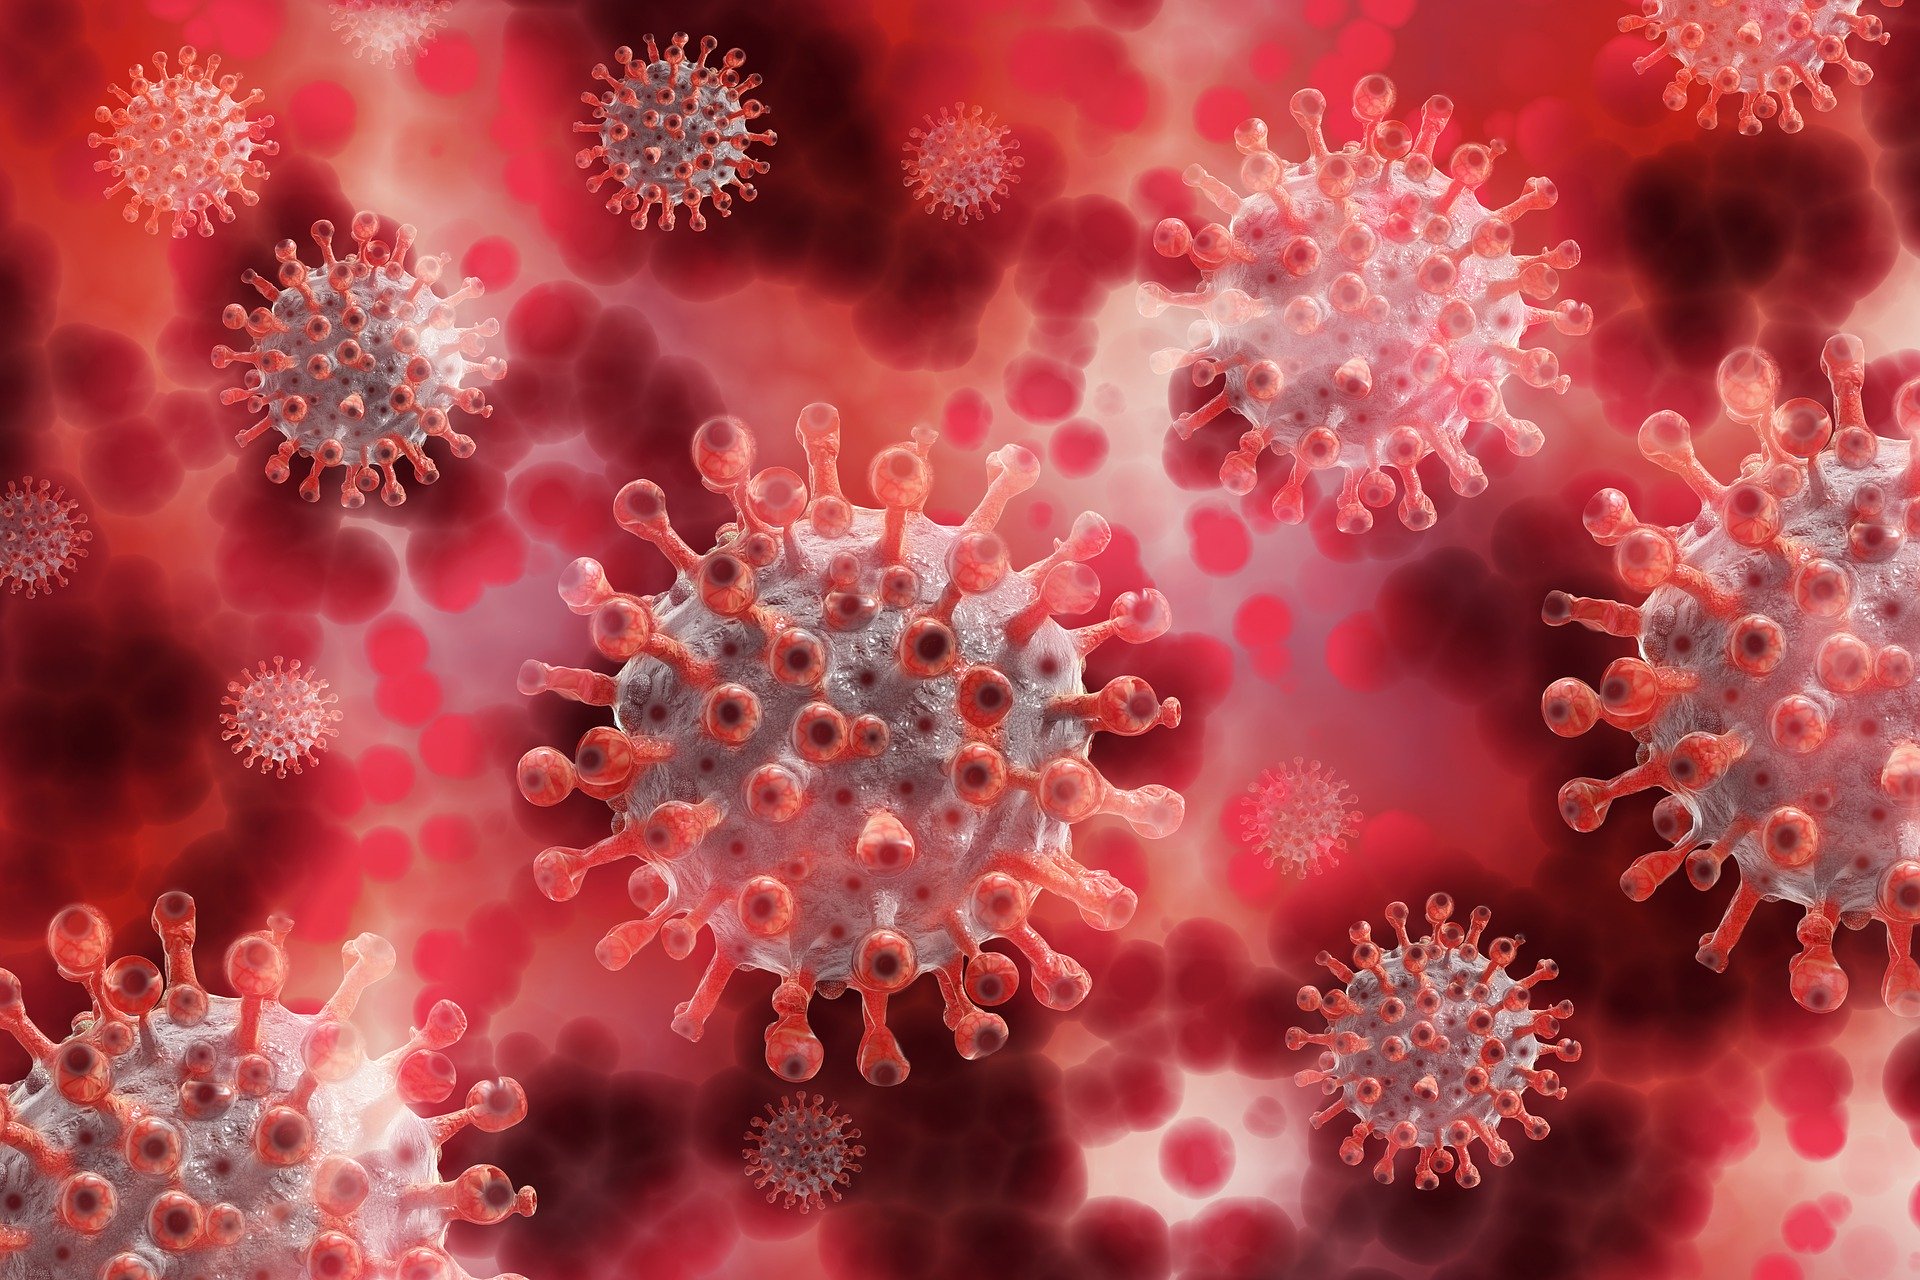 Coronavirus: in Toscana 65 nuovi casi, età media 32 anni. Un decesso